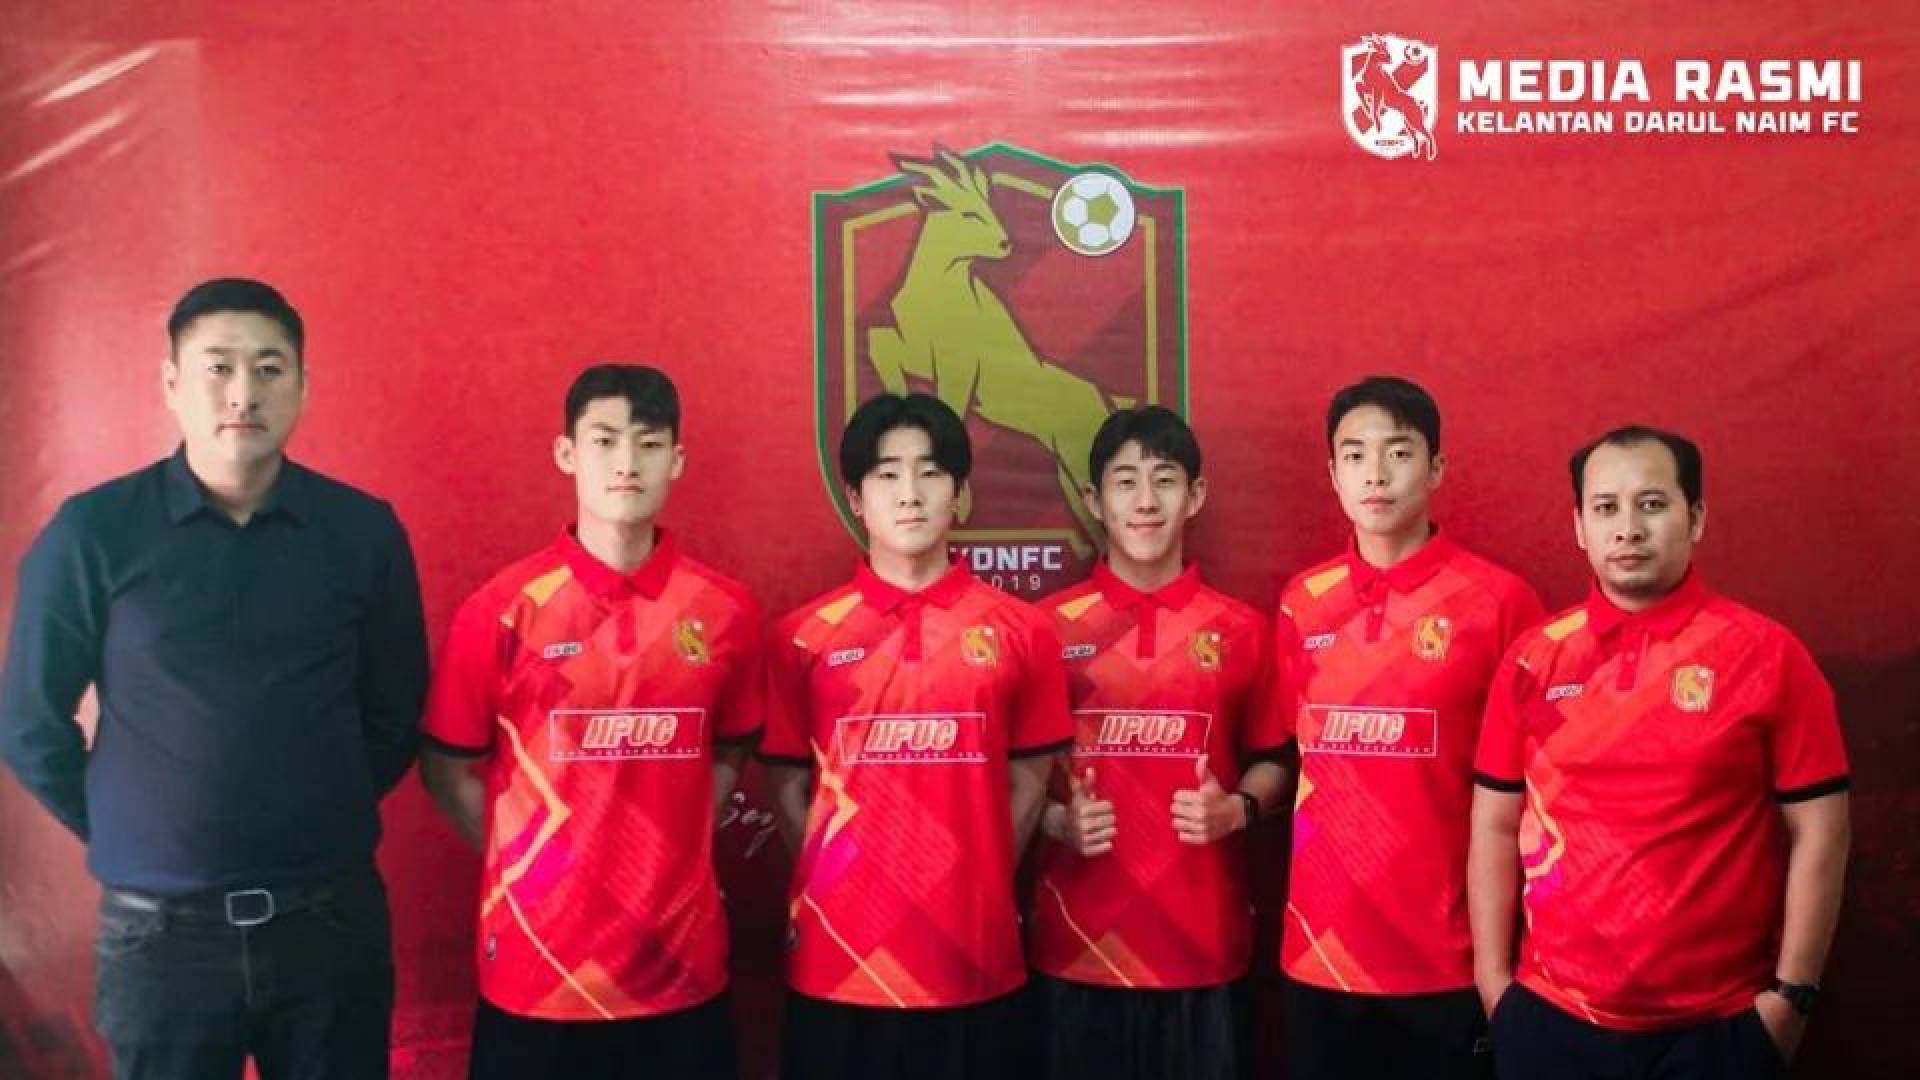 Bintang Liga Utama Korea Kini Perkuat Kelantan